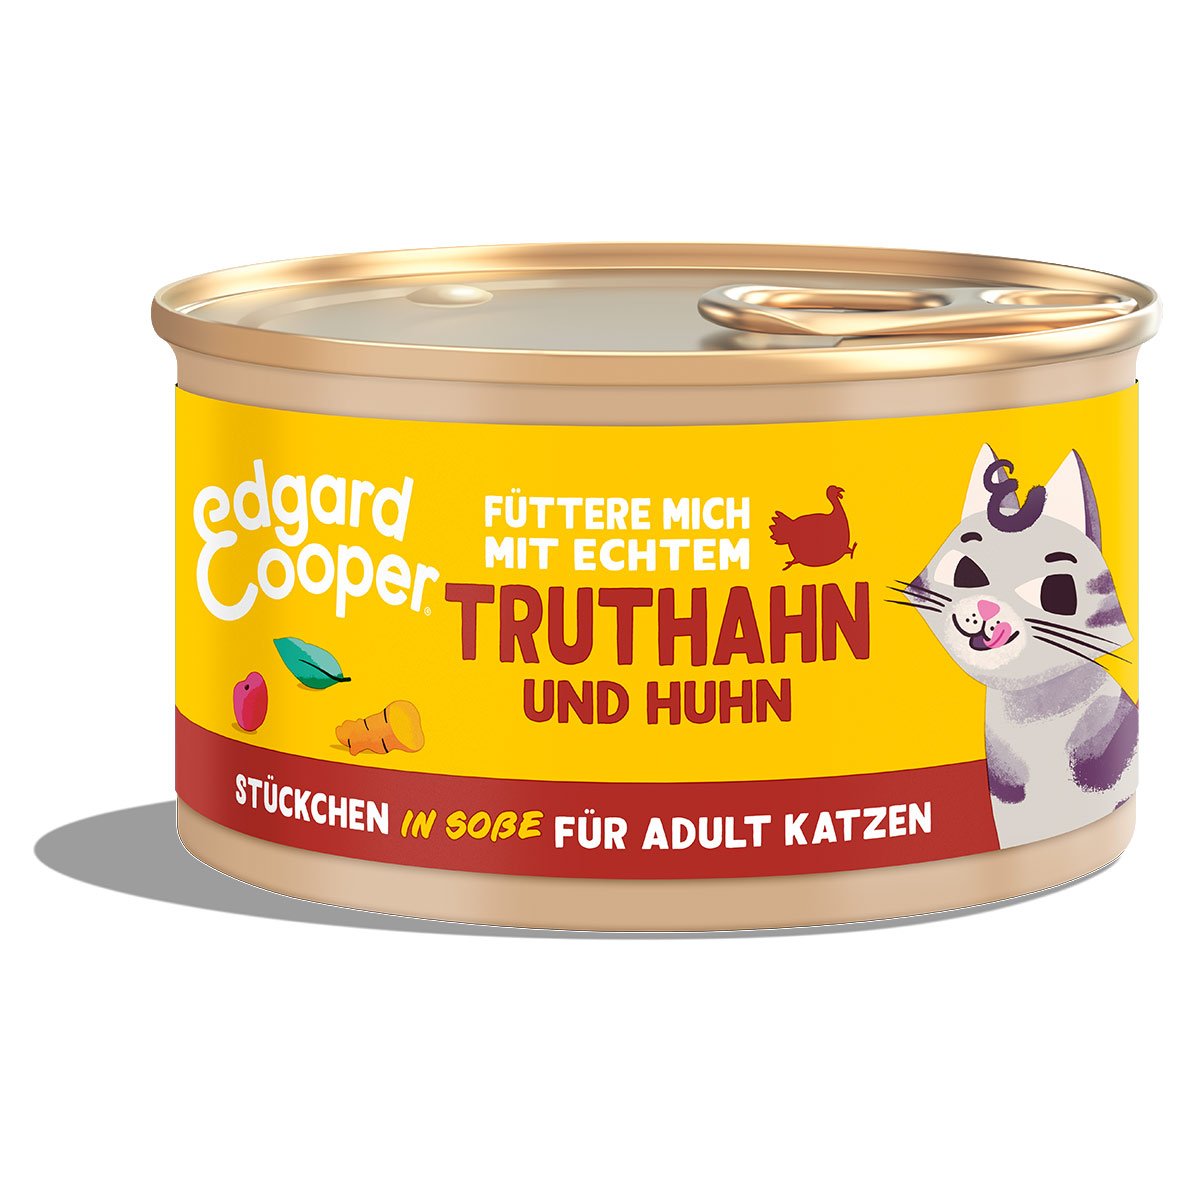 Edgard & Cooper Stückchen in Soße Truthahn und Huhn 18x85g von Edgard & Cooper